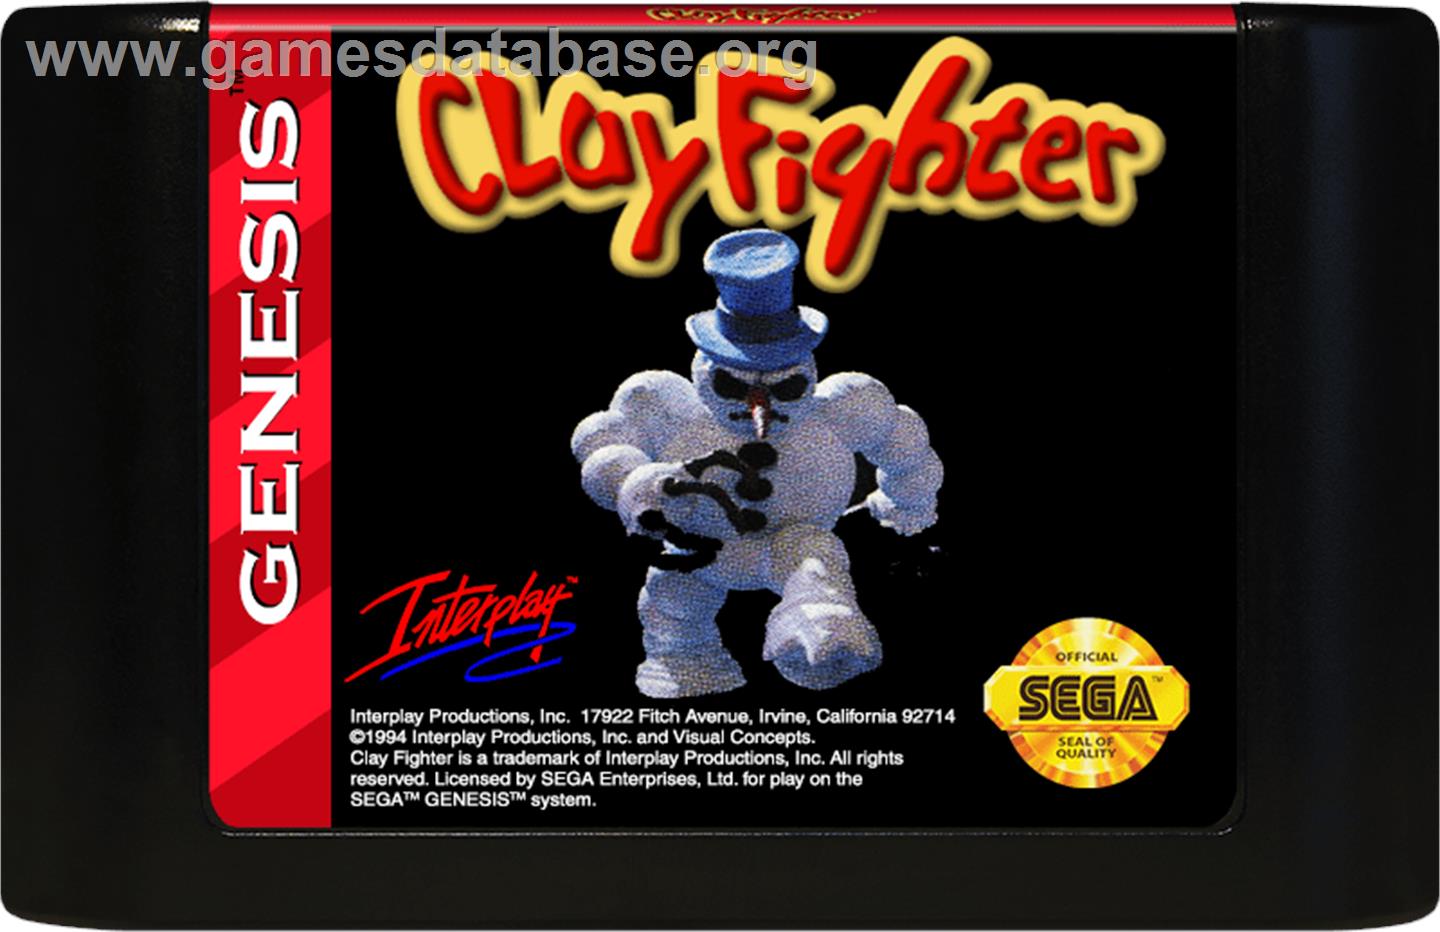 Clay Fighter - Sega Genesis - Artwork - Cartridge